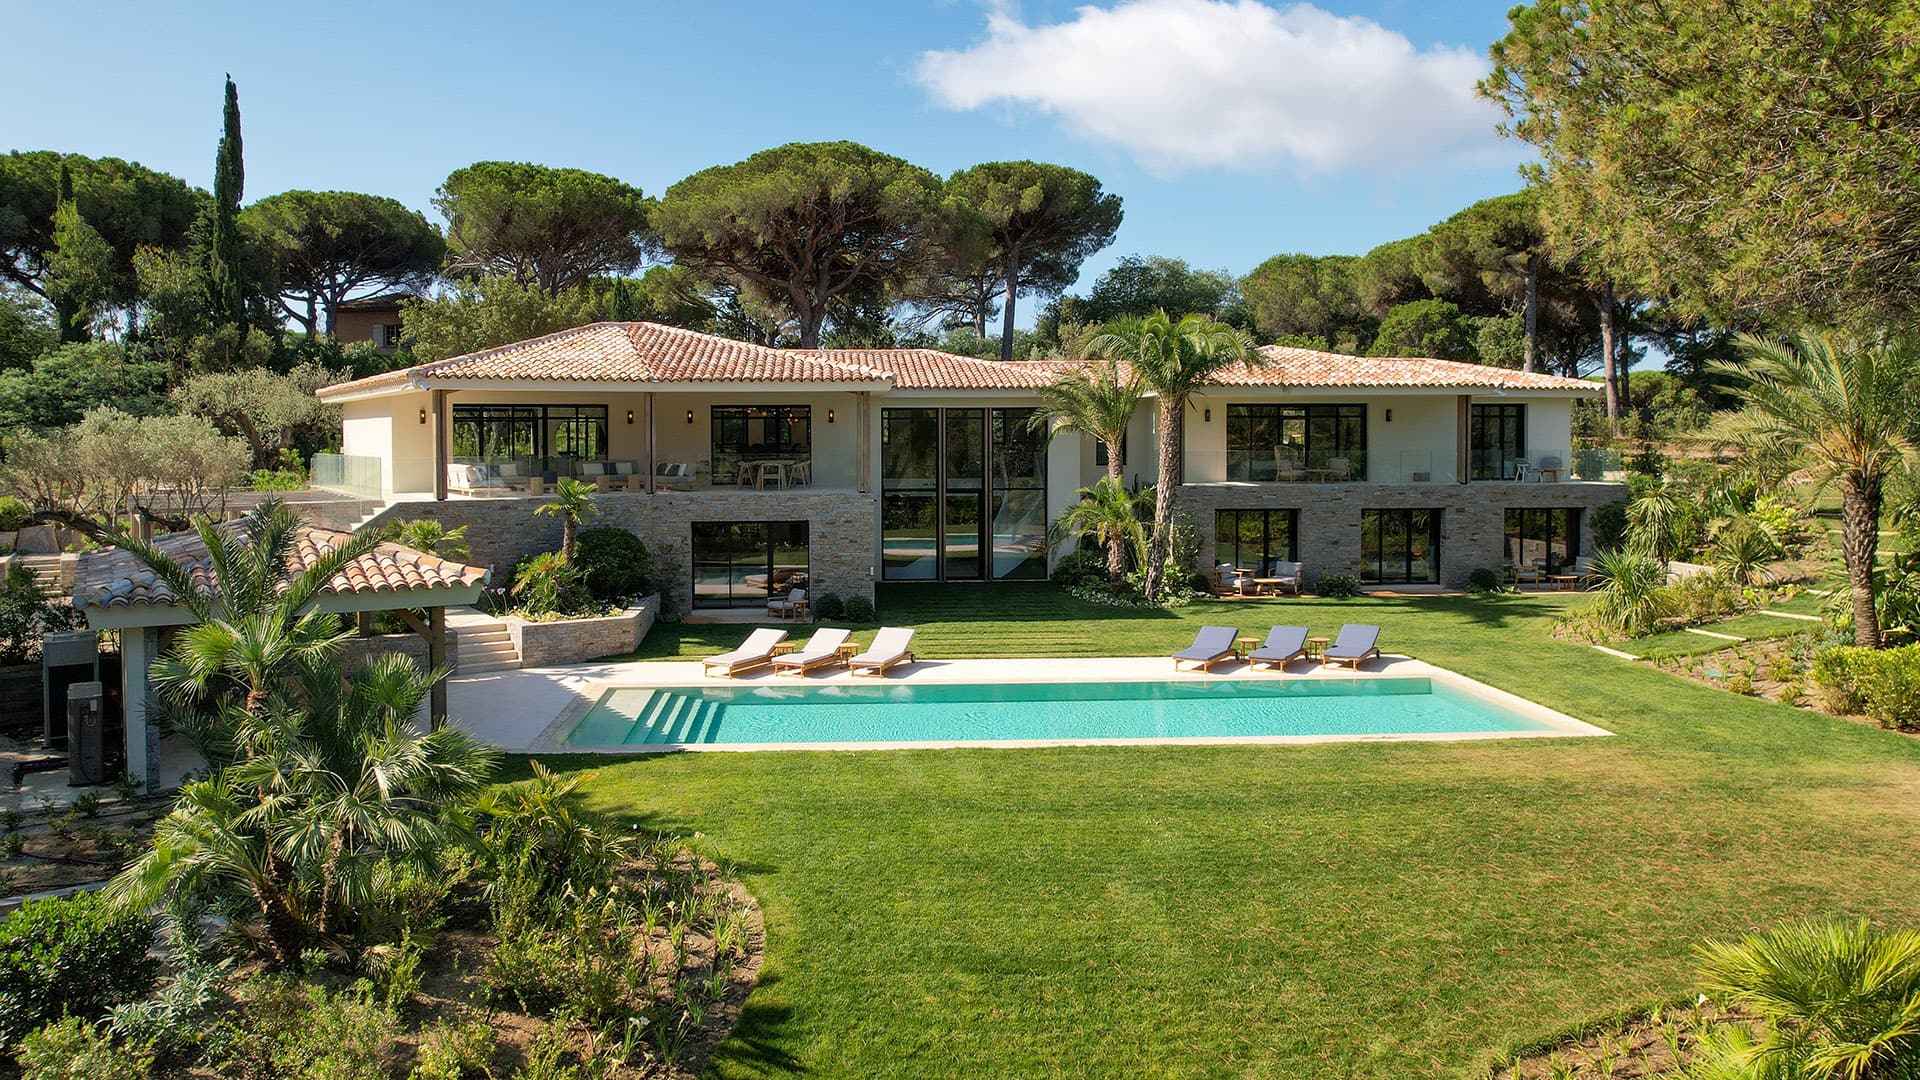 Luxury Villa on La Pointe de l’Ay in St Tropez, France pool